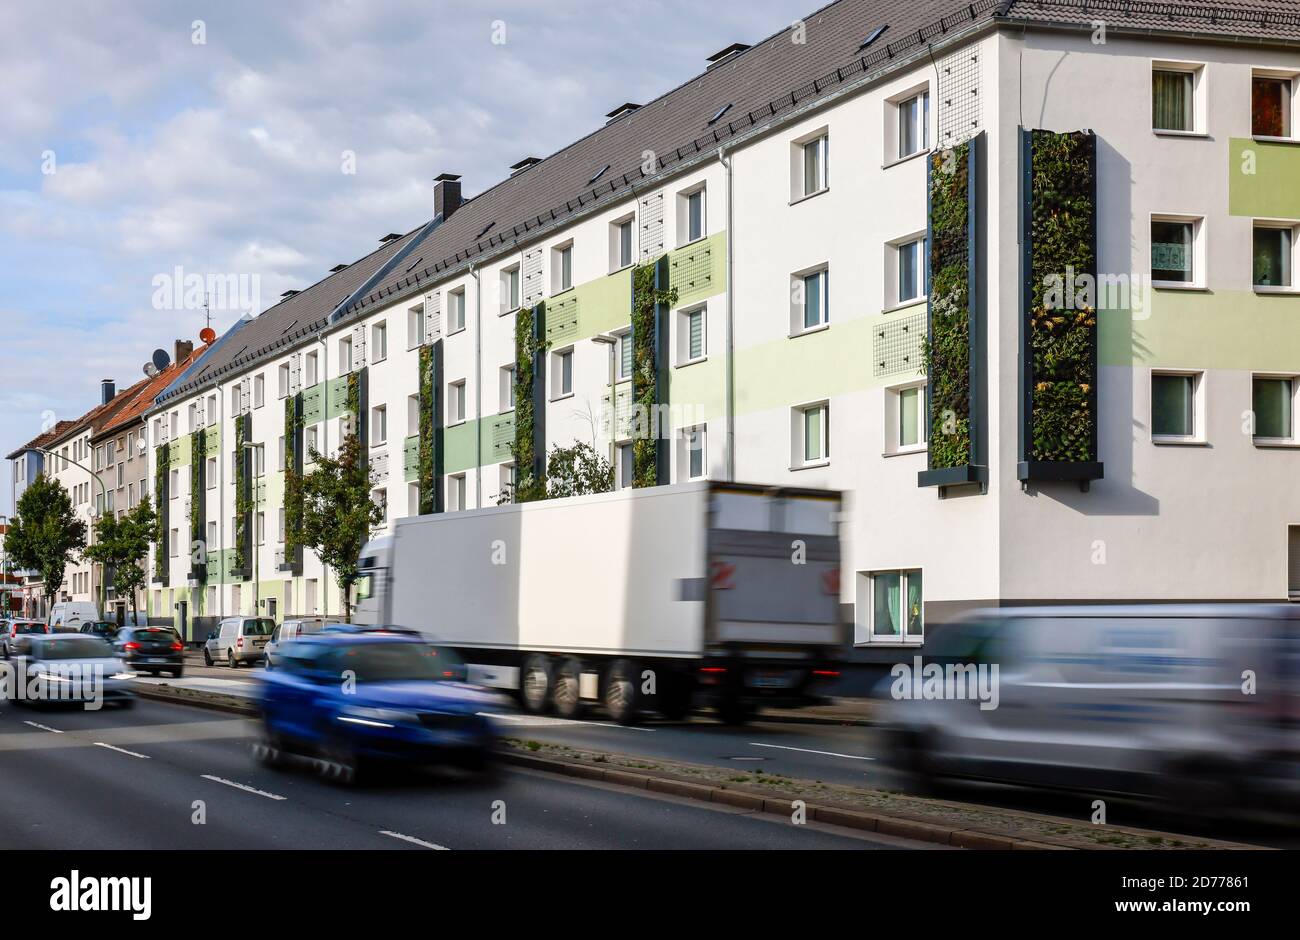 Essen, Ruhrgebiet, Nordrhein-Westfalen, Deutschland - wandgebundene Fassadenbegrünung an frisch reorganisierten Häusern der Allbau Wohnungsbaugesellschaft Stockfoto